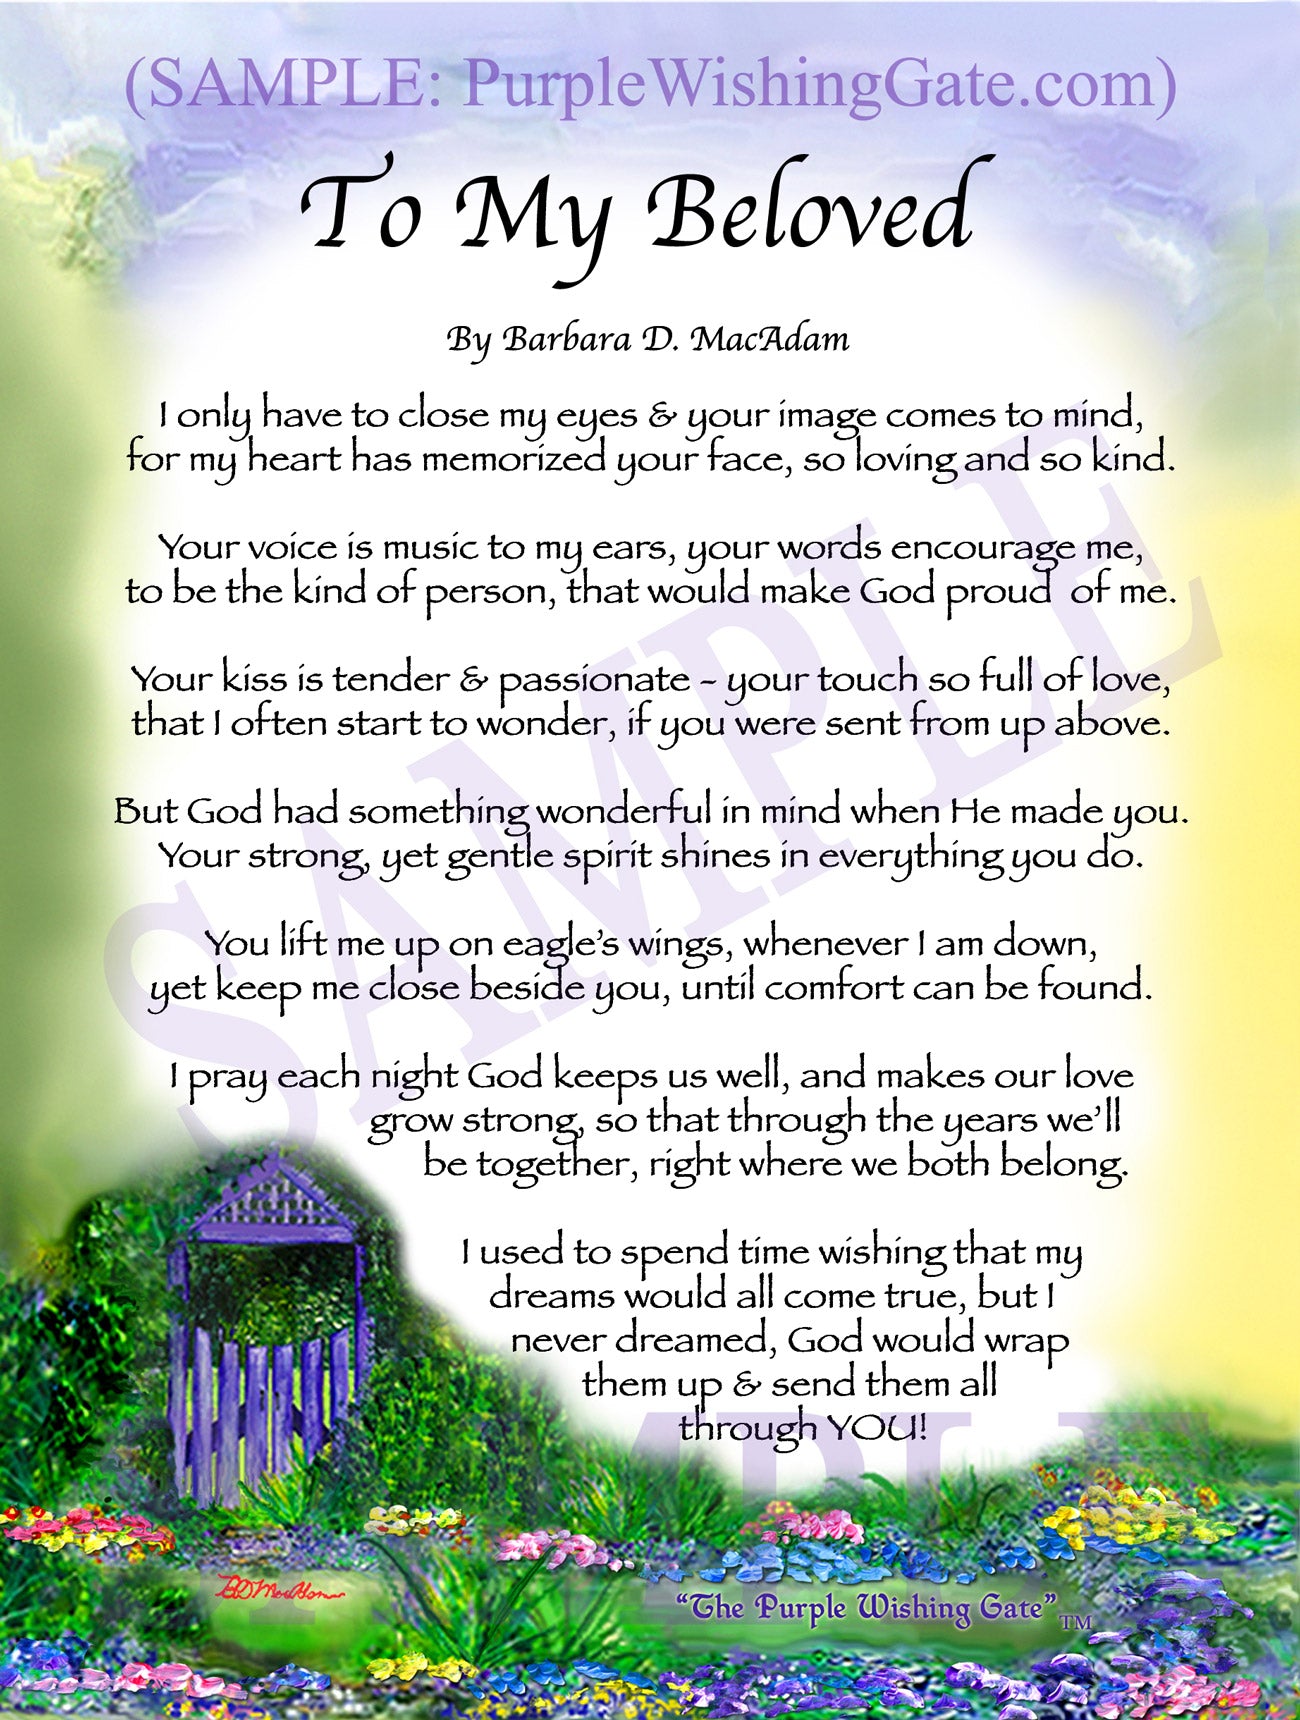 
              
        		To My Beloved - Love Poem - PurpleWishingGate.com
        		
        	